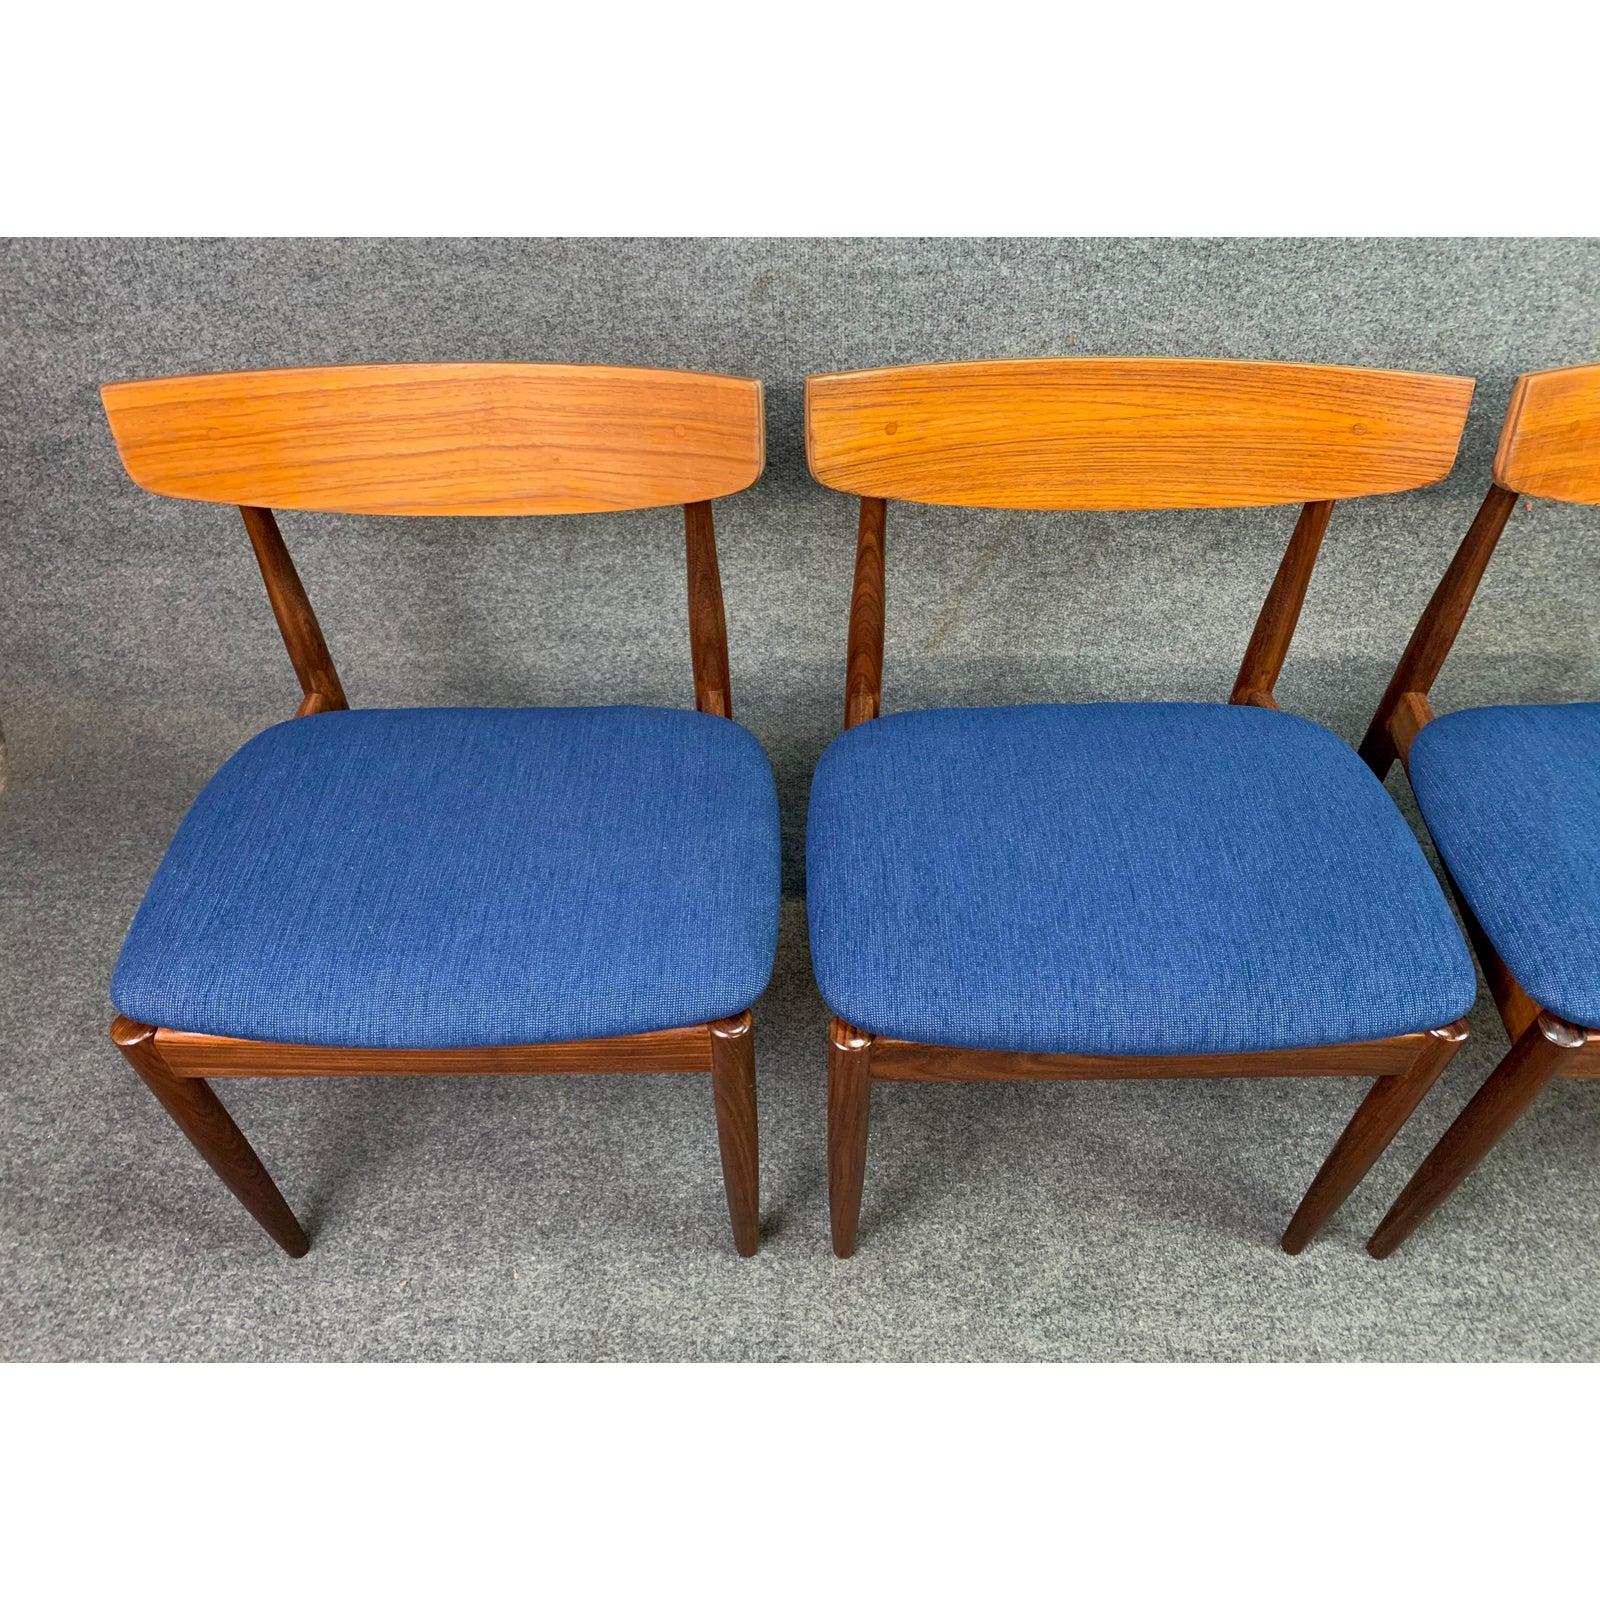 English Set of 4 Vintage British Midcentury Teak Dining Chairs by Kofod Larsen & G Plan